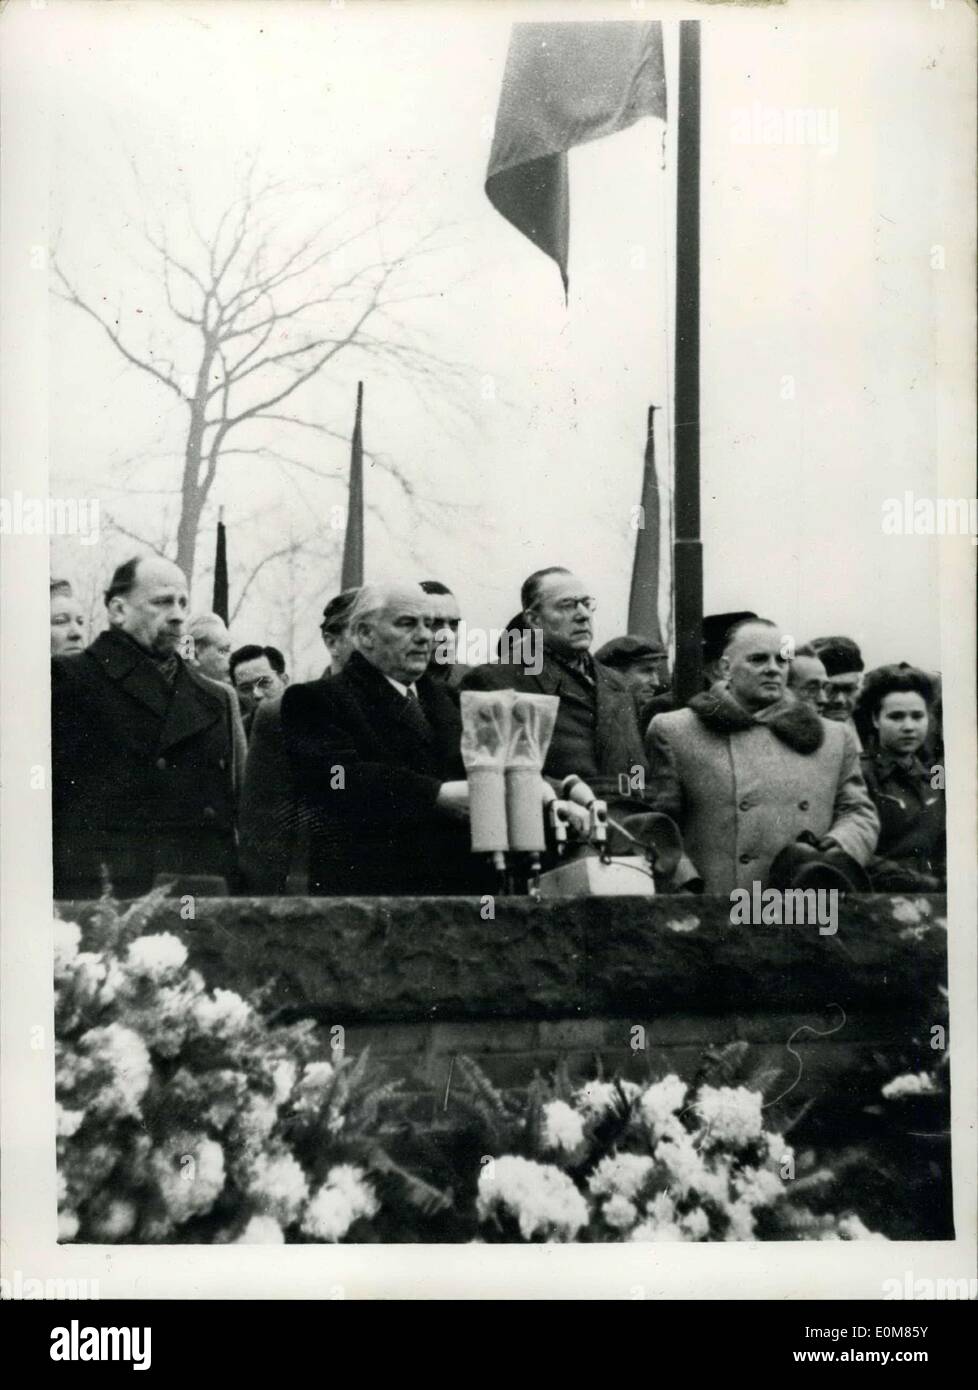 21 janvier 1954 - l'est pour démontrer les Berlinois Juifs assassinés communistes allemands. Le président Pieck parle : En même temps que les Juifs étaient persécutés par les Soviets dans tous les États communistes - le Gouvernement de la RDA - l'Association allemande de l'est une démonstration par l'Est de l'ordre dans 'Berlinois 'Mémoire'' de deux communistes allemands bien connu assassiné il y a 34 ans, Karl Liebknecht et Rosa Luxenburg. Un défilé salue a eu lieu dans les rues de Berlin est à laquelle les images du ''Martyrs'' ont été effectués Banque D'Images